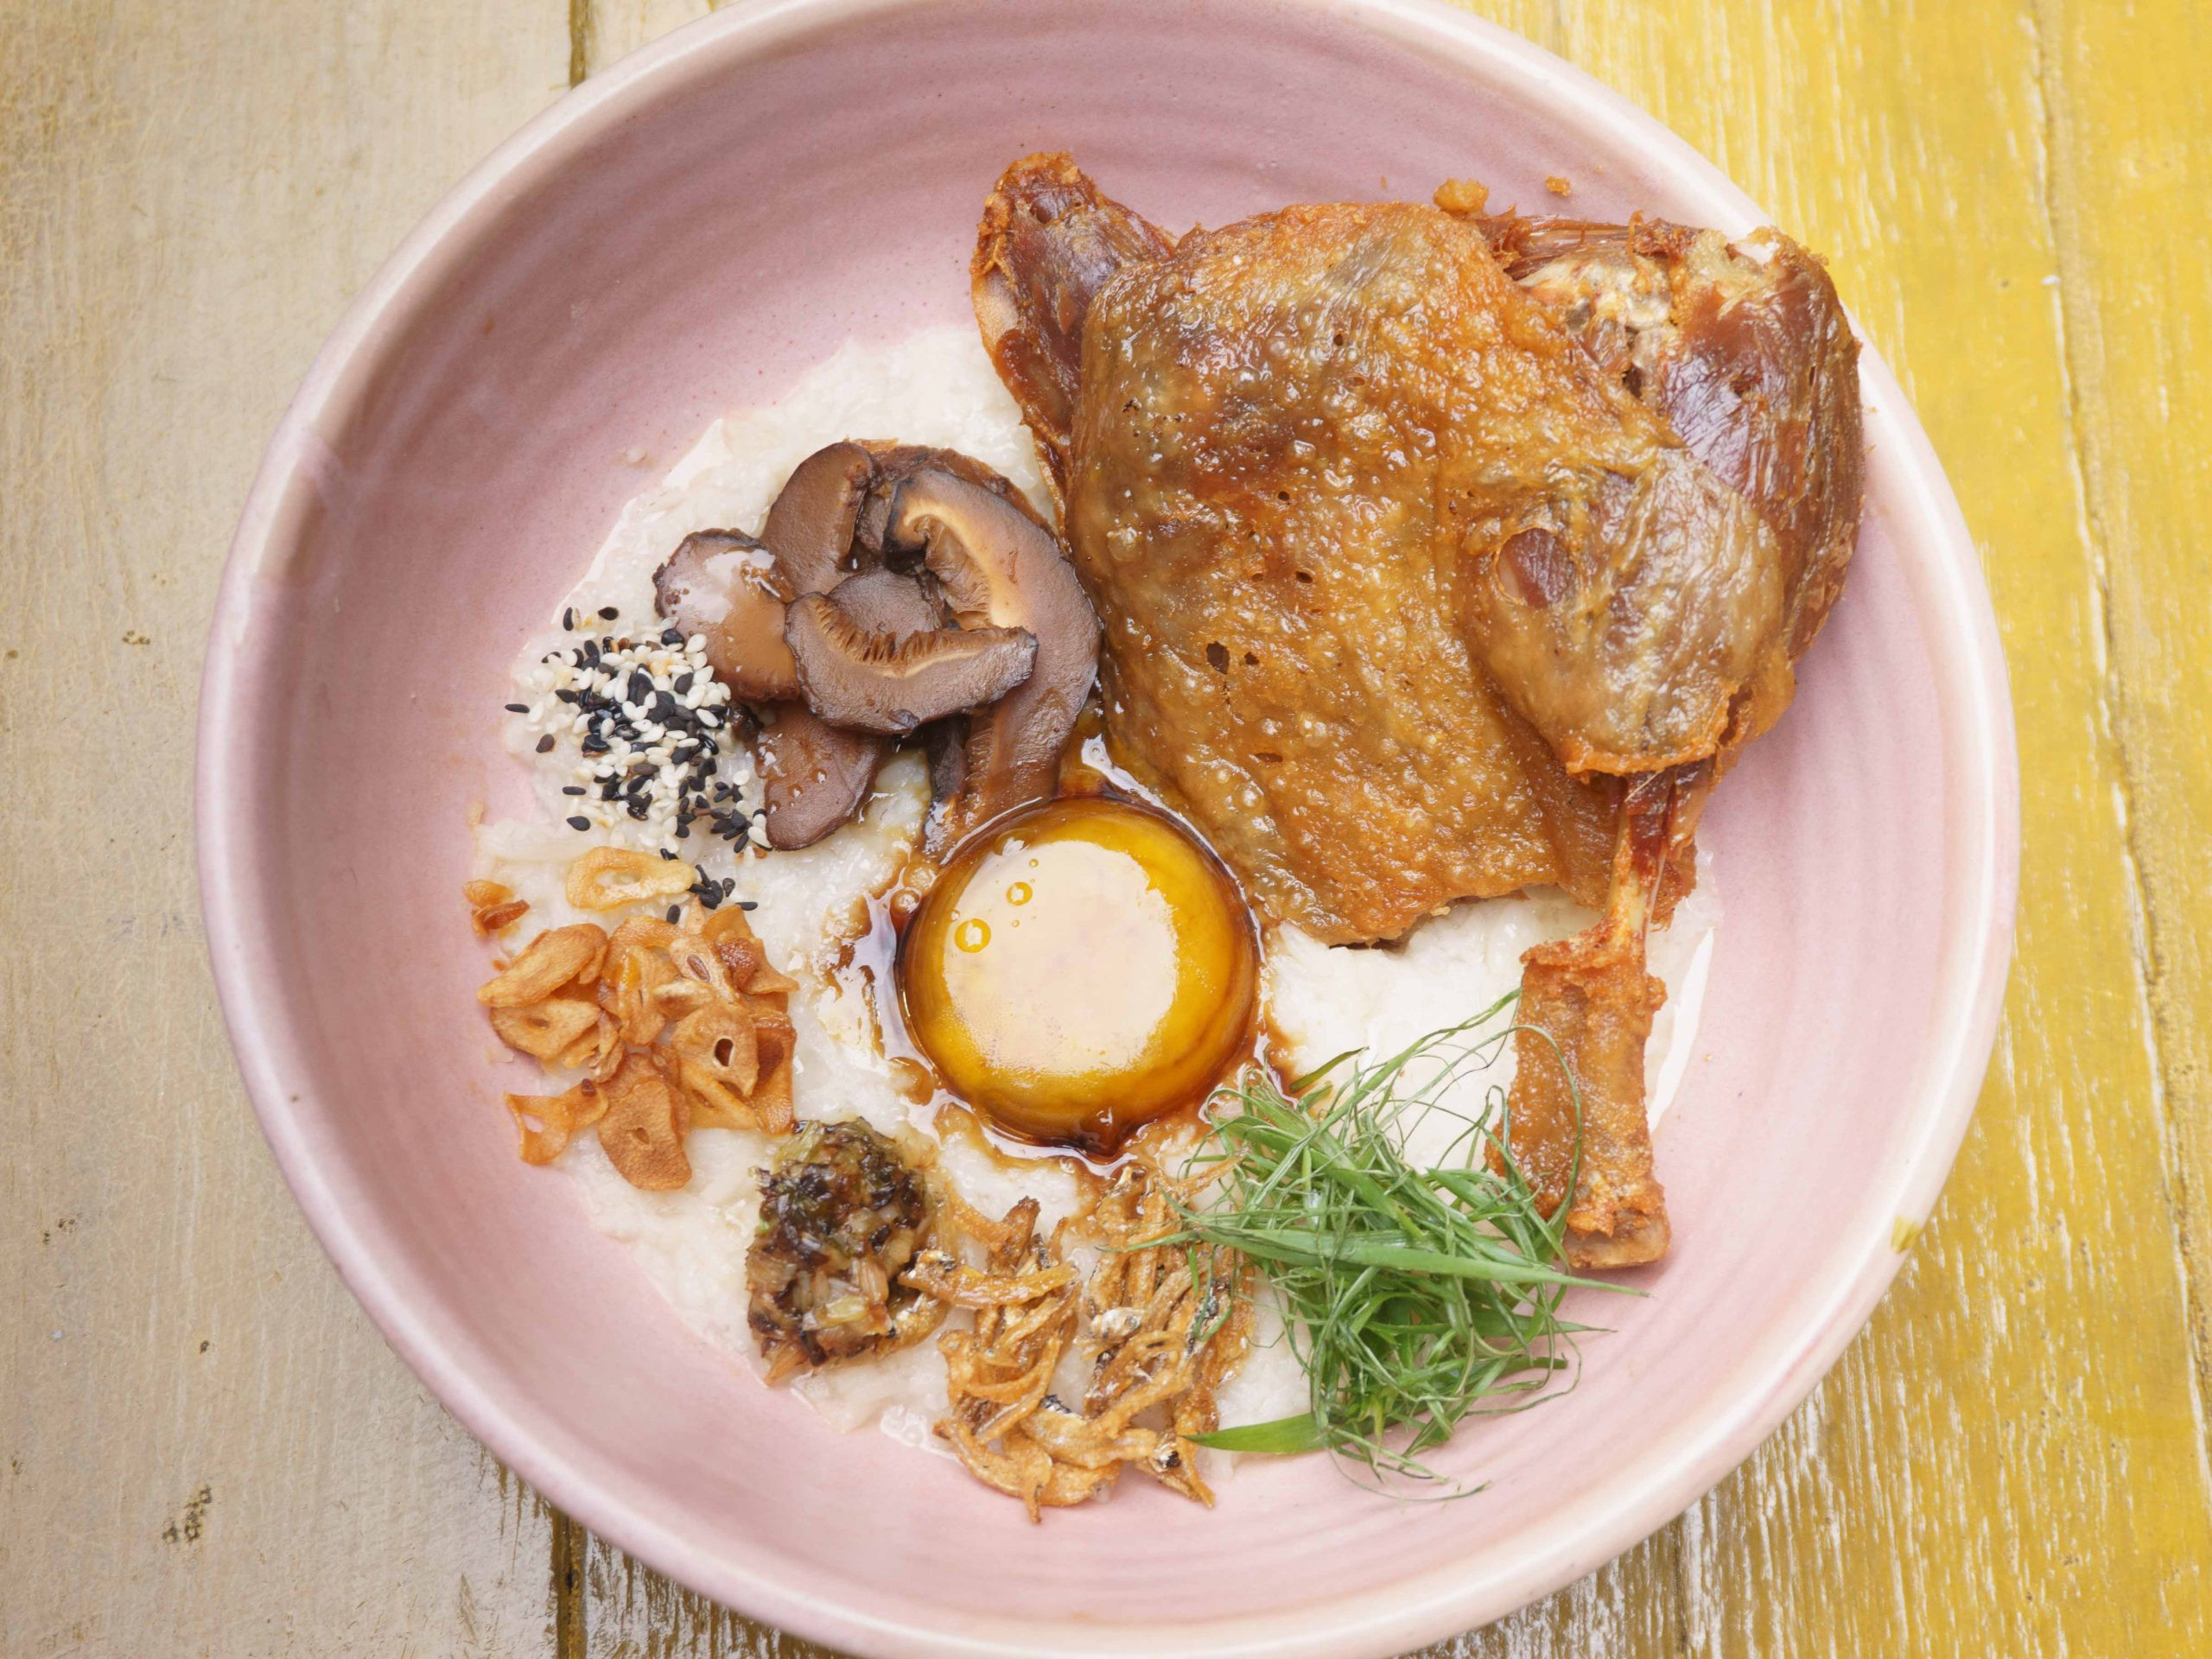 Bubur nasi dengan pelbagai lauk termasuk confit itik, di dalam mangkuk merah jambu di atas meja kayu.